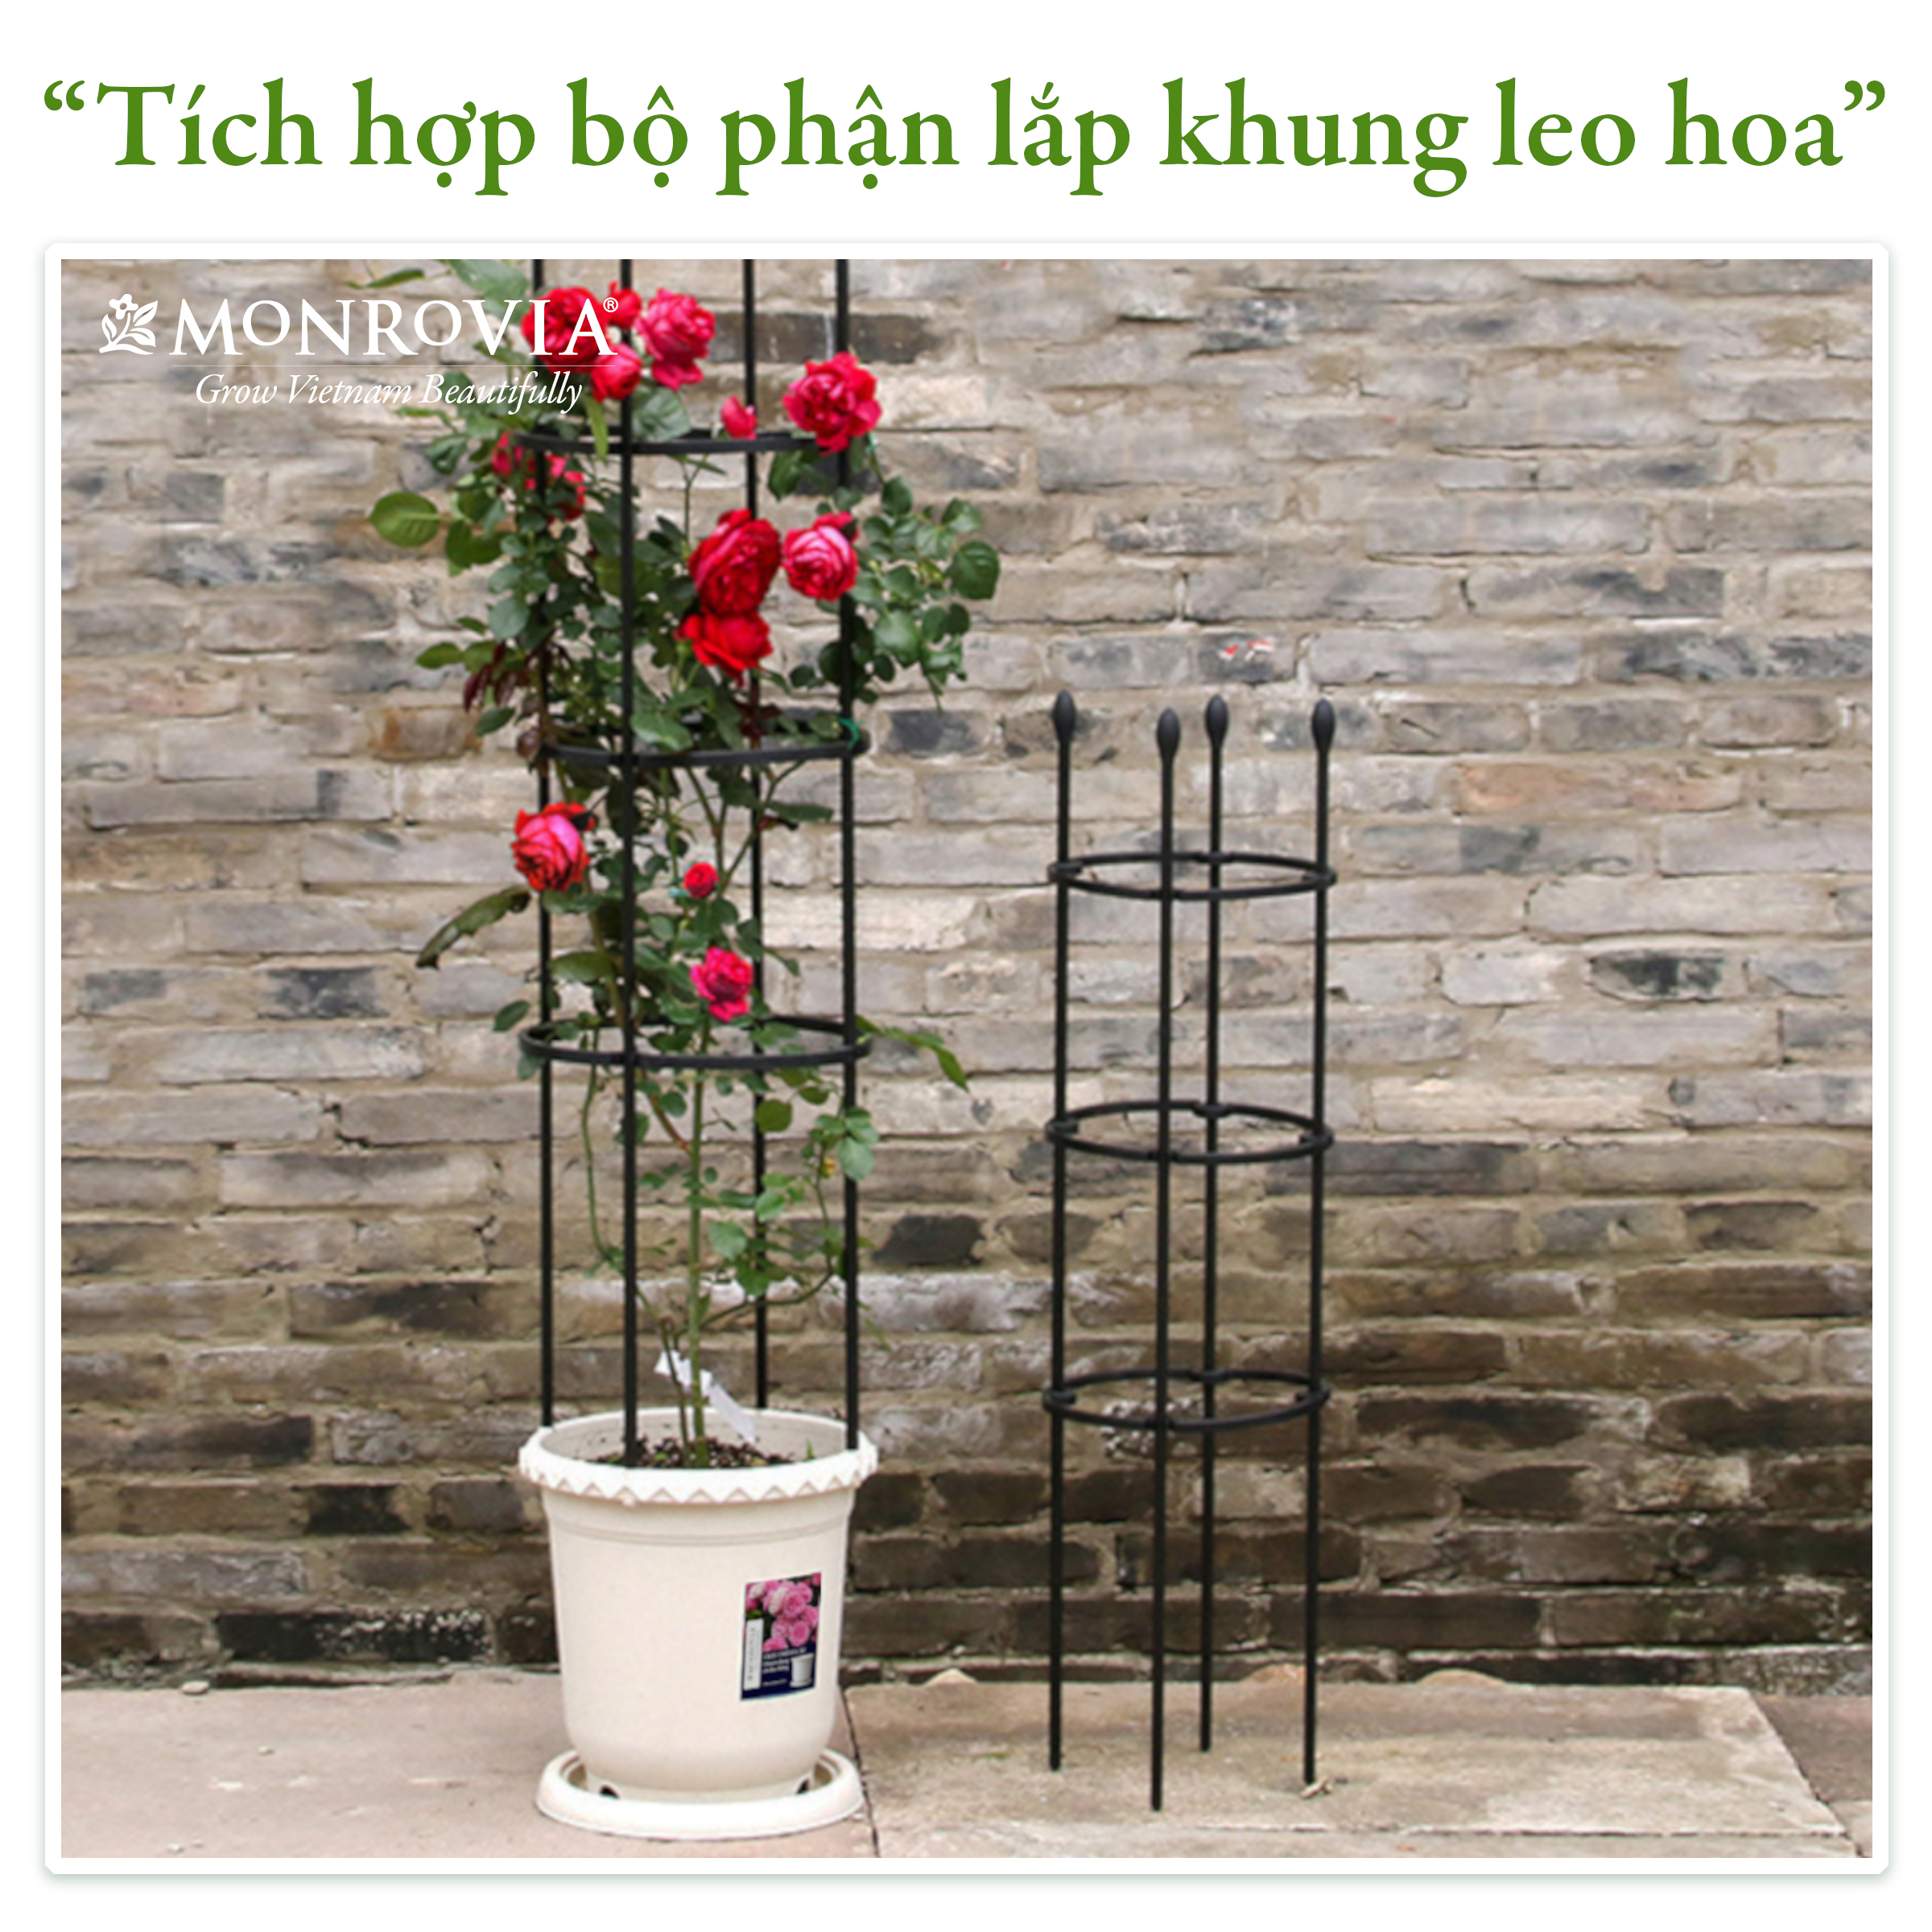 Chậu trồng cây Decor trang trí thương hiệu MONROVIA chuyên cho Hoa, hoa hồng, kèm đĩa lót thông minh, thiết kế tinh tế, tiêu chuẩn Châu Âu